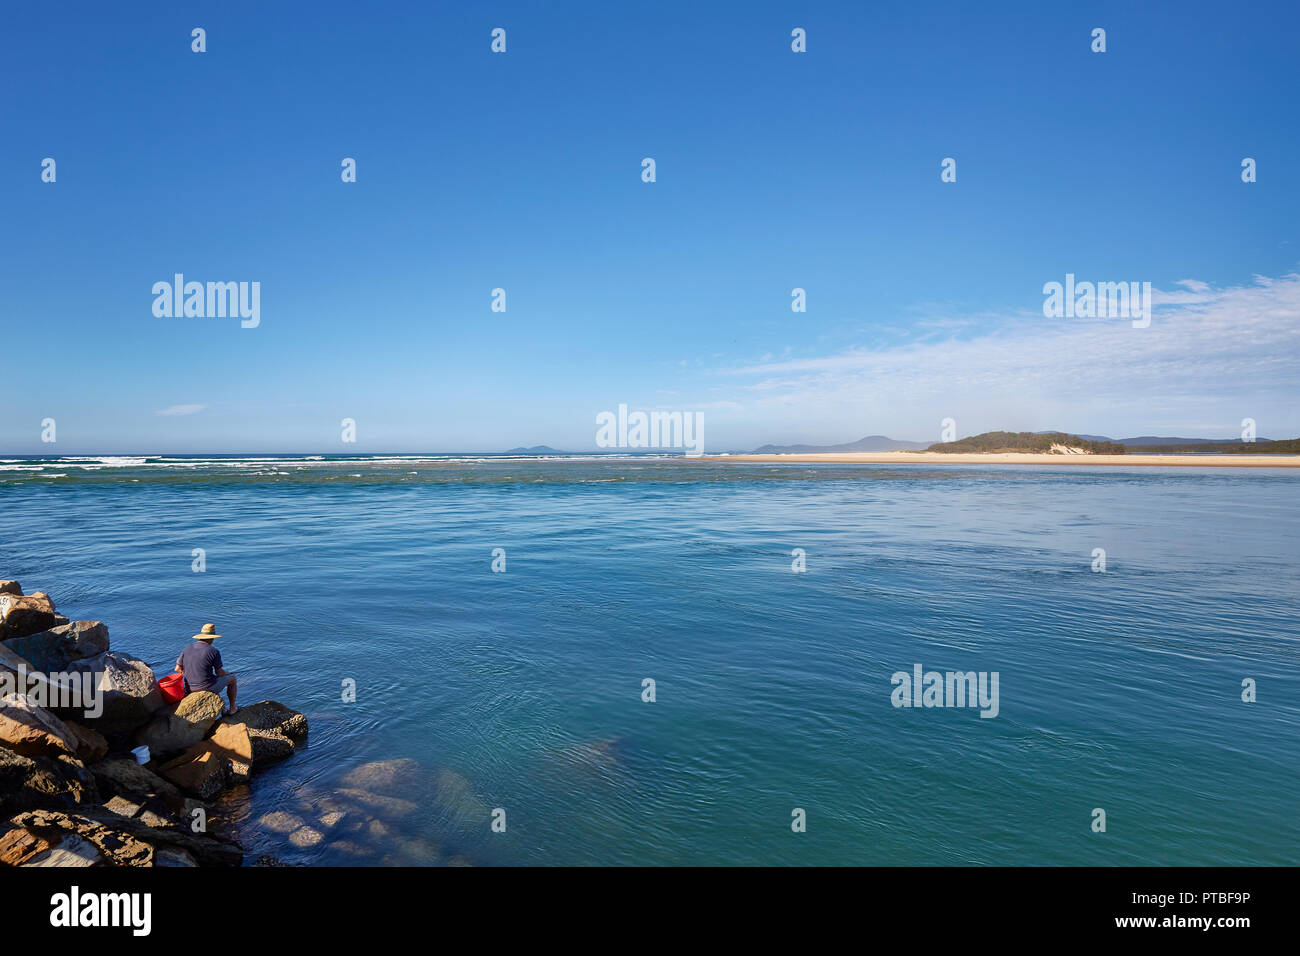 Un uomo sul suo proprio indossando un cappello sat sui massi in corrispondenza del bordo di mare a Nambucca teste, Nuovo Galles del Sud, Australia Foto Stock